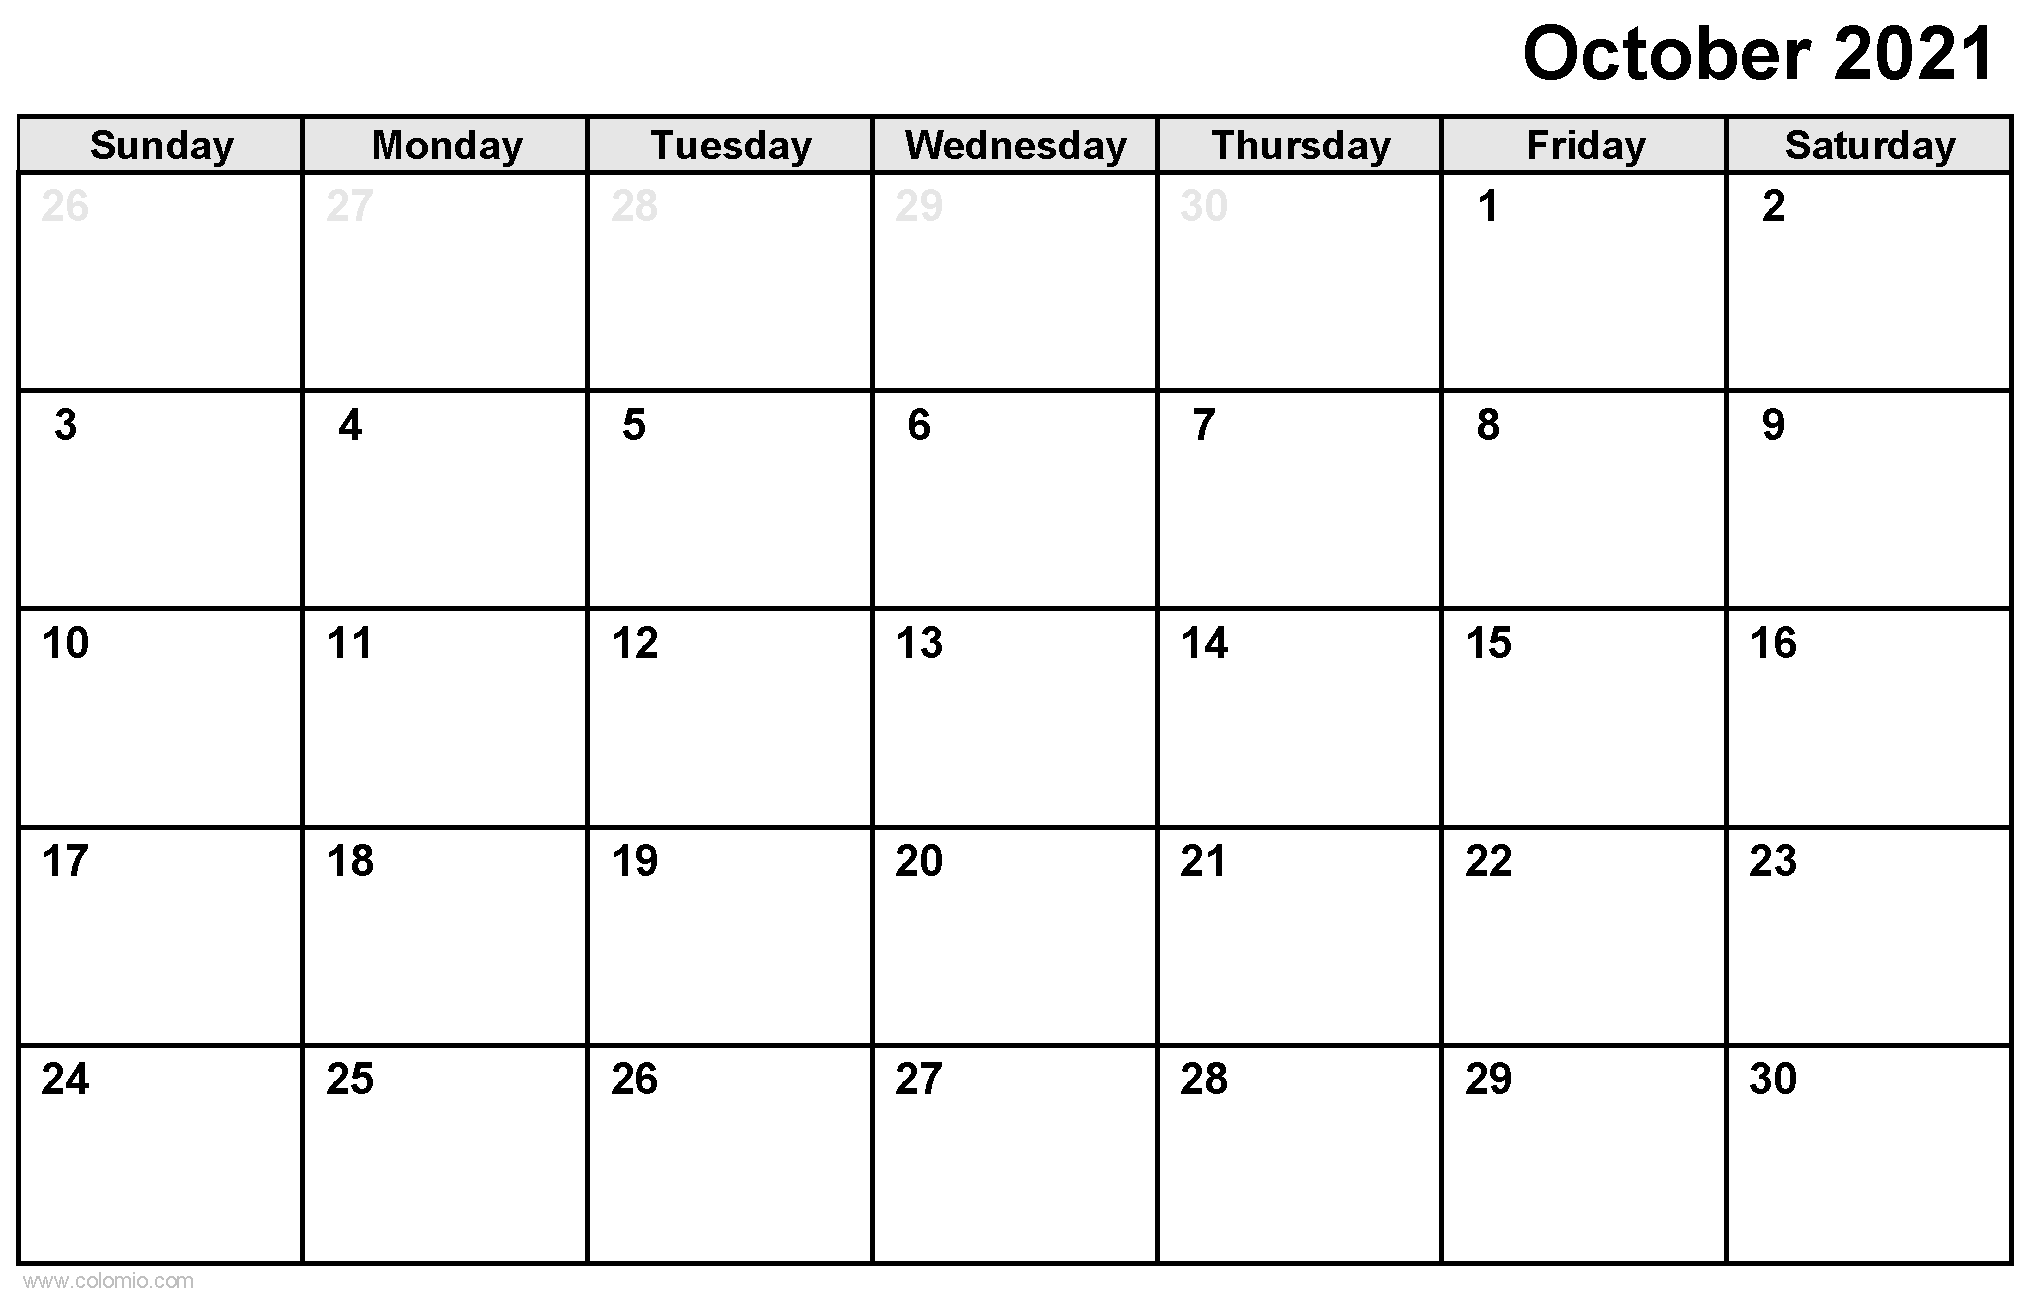 October 2021 Calendar printable